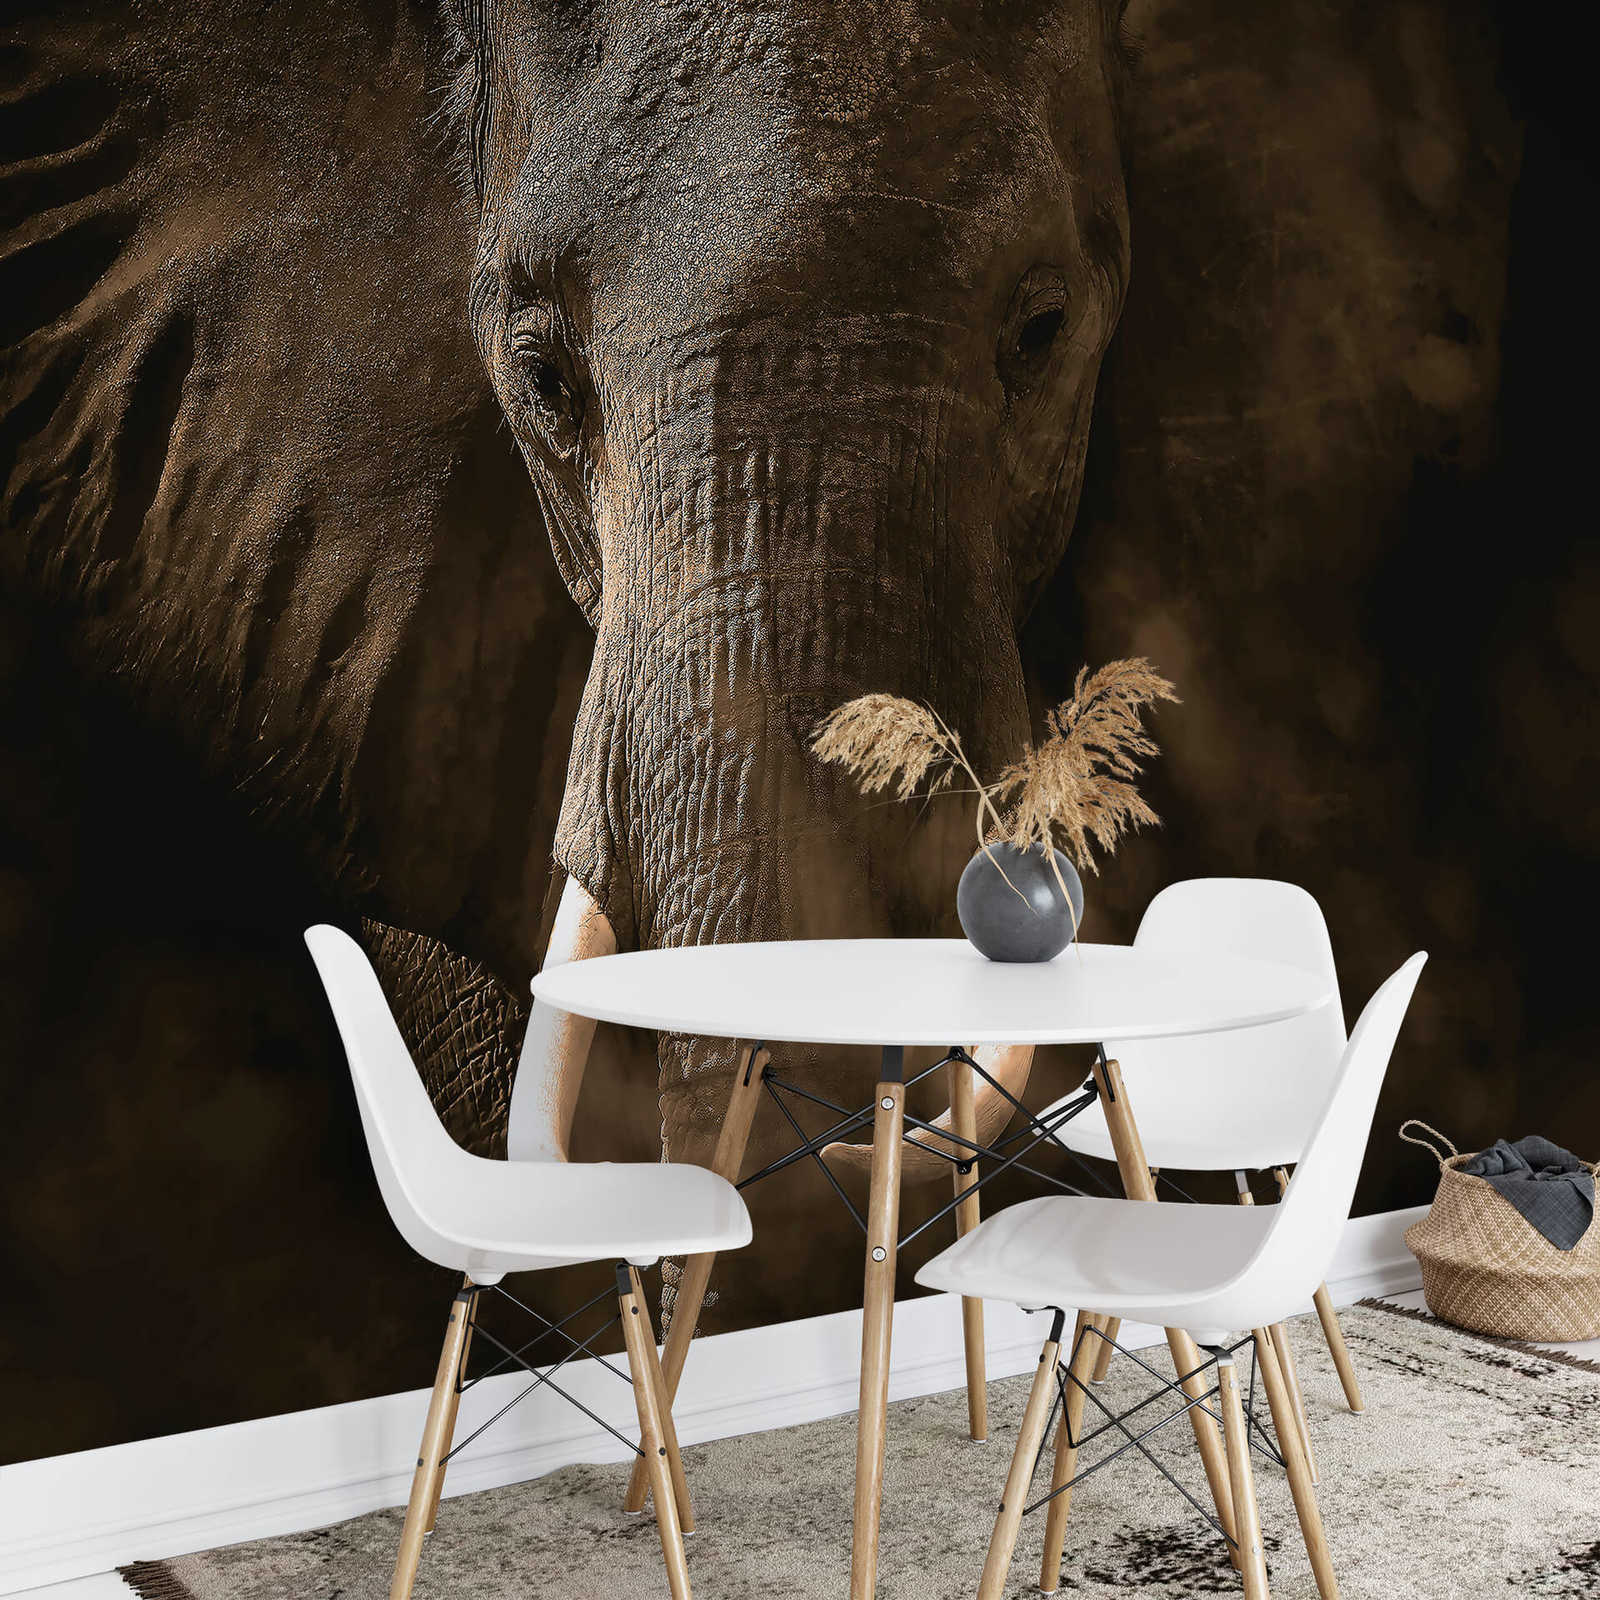             Papel pintado Elefante de animales Safari - Gris, Marrón, Blanco
        